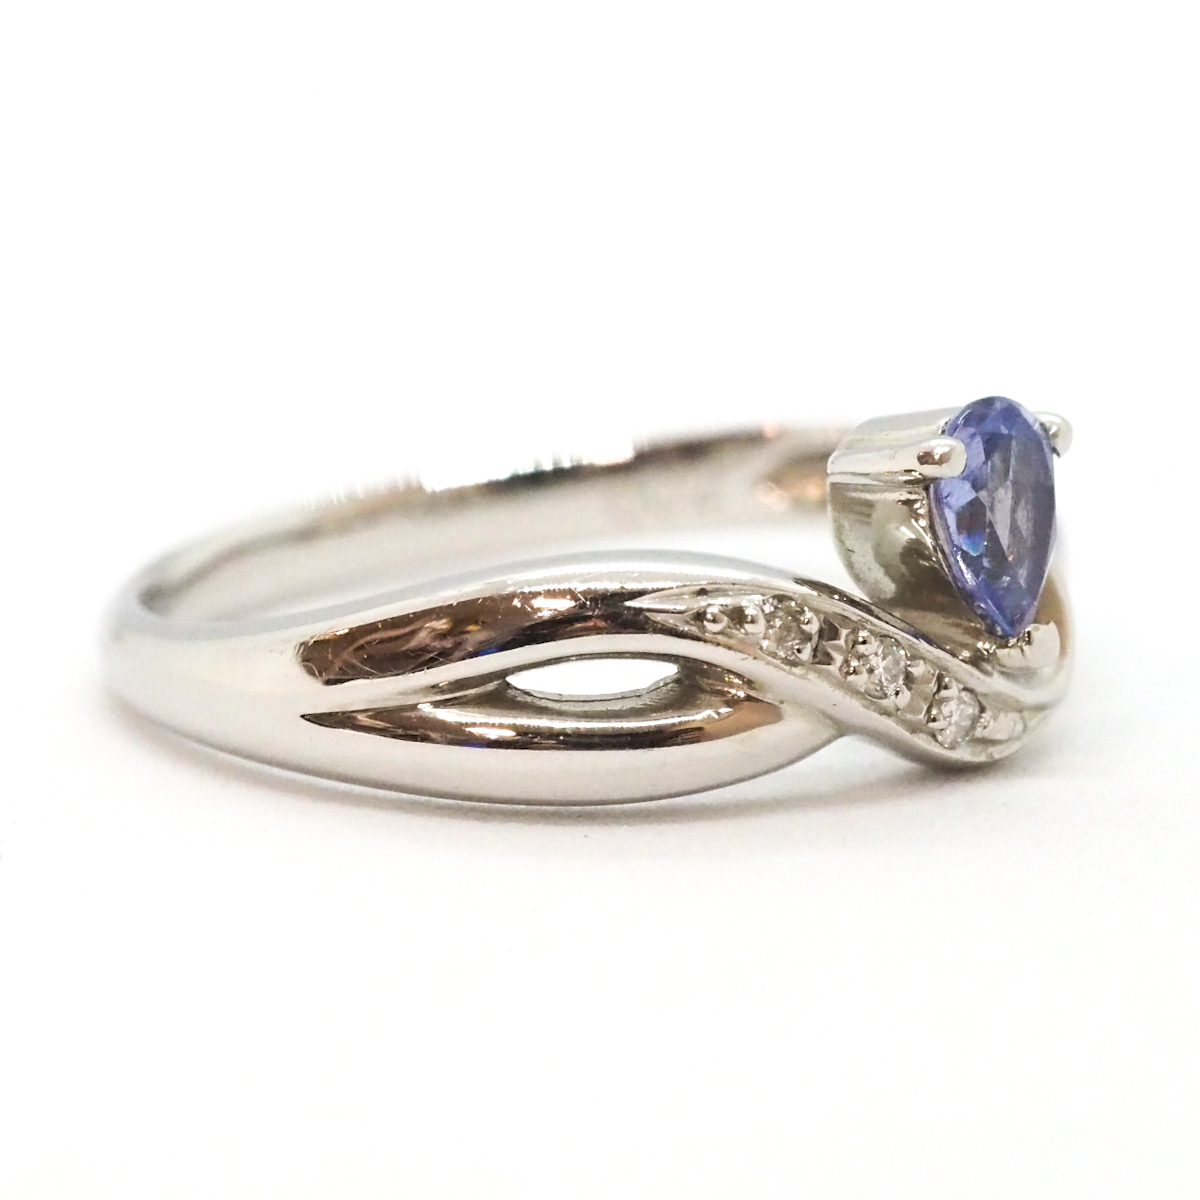 Pt900 цвет камень есть цветной камень mere бриллиант есть 0.02ct платина кольцо 13 номер 4.0g кольцо 